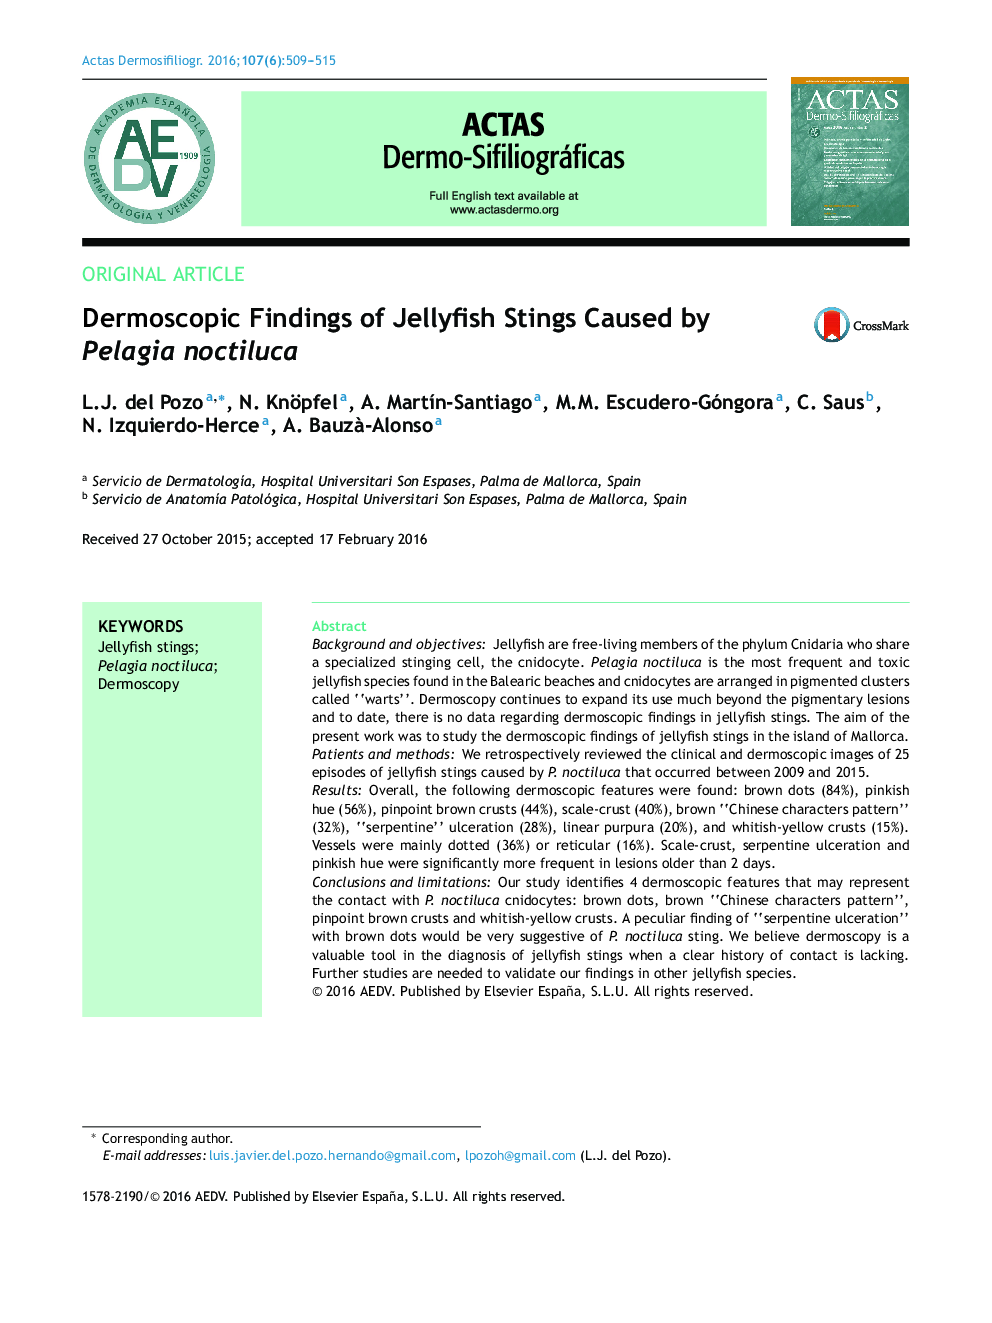 یافته های درماتوسکوپی گزش عروس دریایی ناشی از Pelagia noctiluca